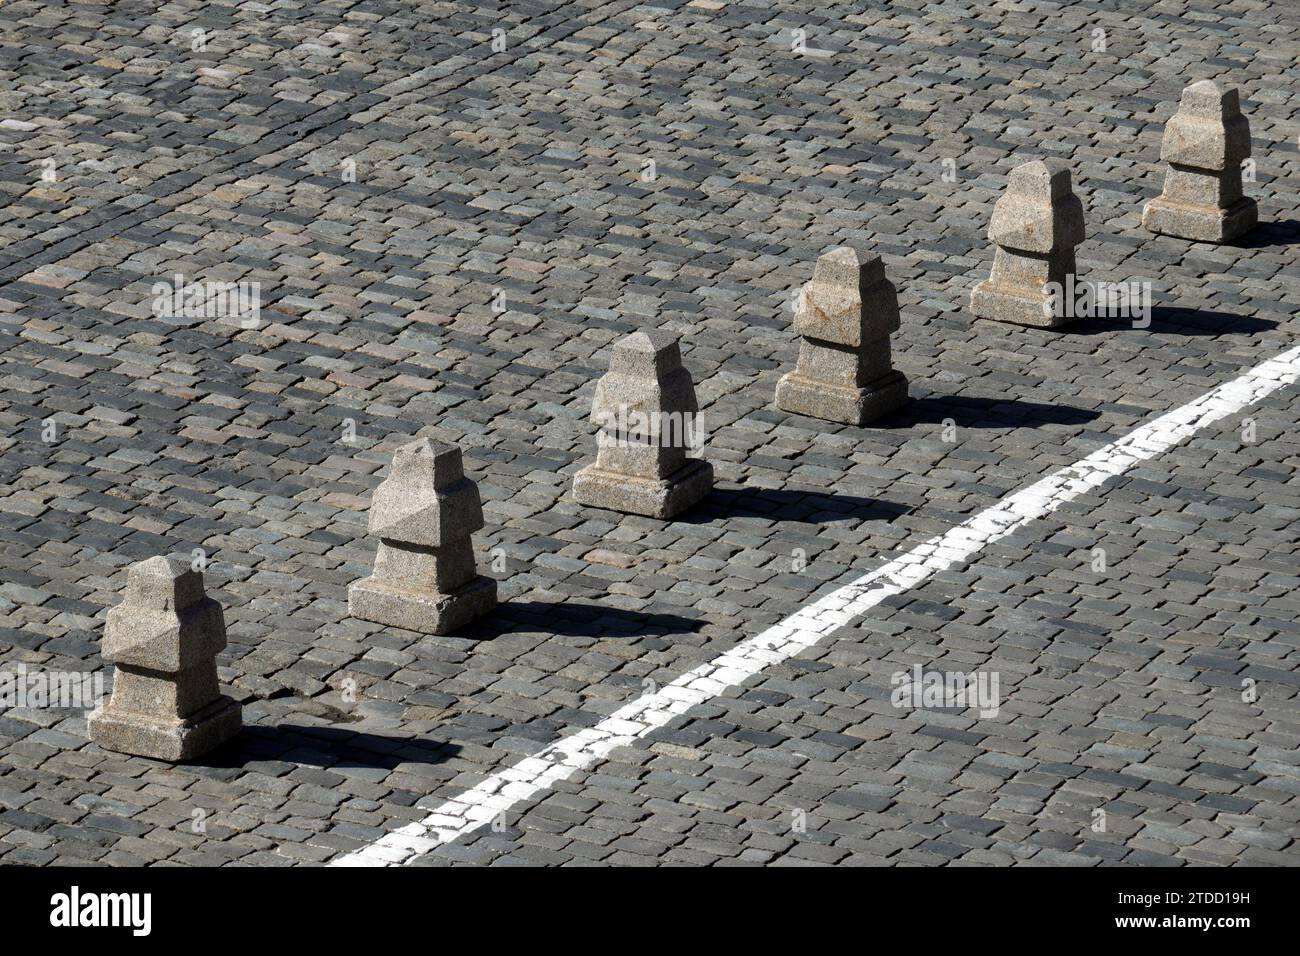 Barriera dalle piramidi di granito dopo una lunga linea bianca sulla vista laterale della pavimentazione stradale in pietra Foto Stock